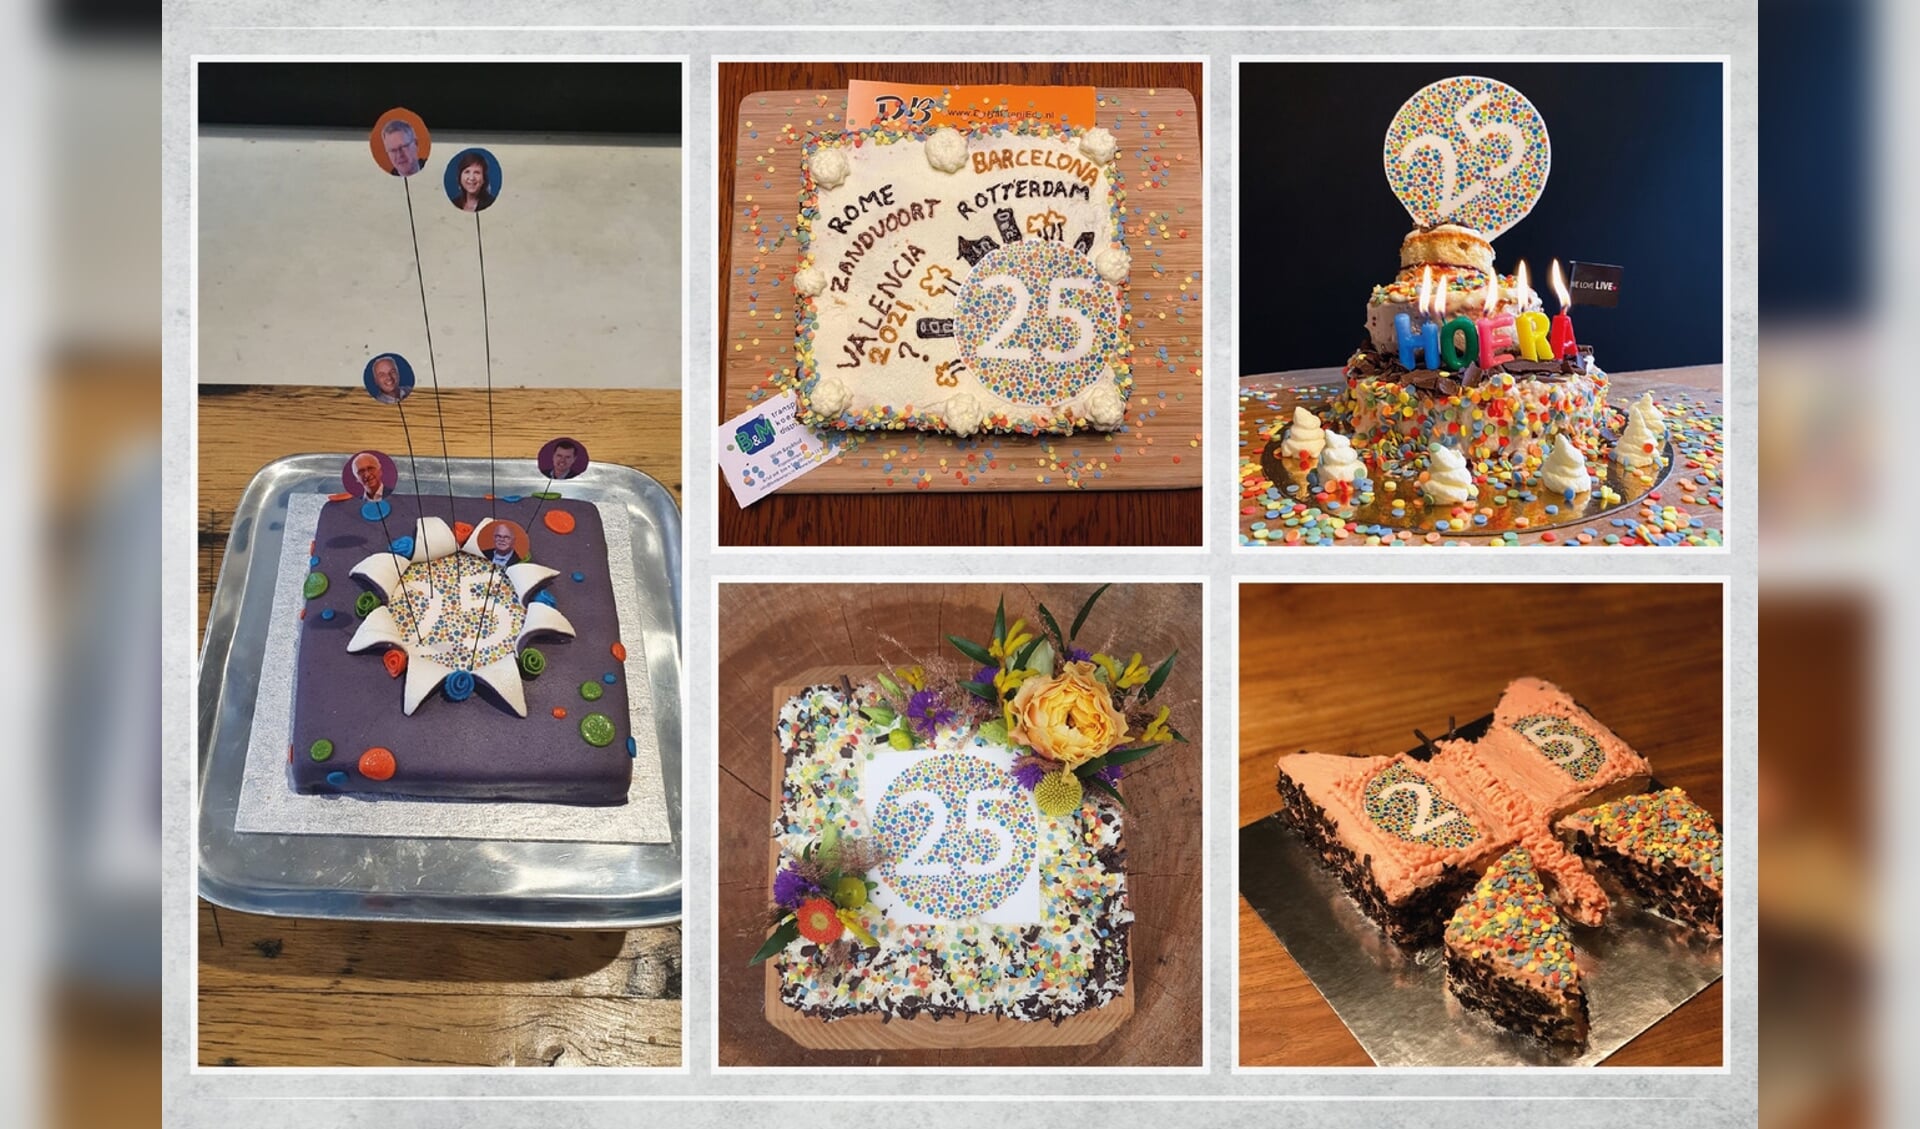 Het bestuur van de Gelderse  Kring kreeg verschillende foto's binnen van creatieve taarten. 